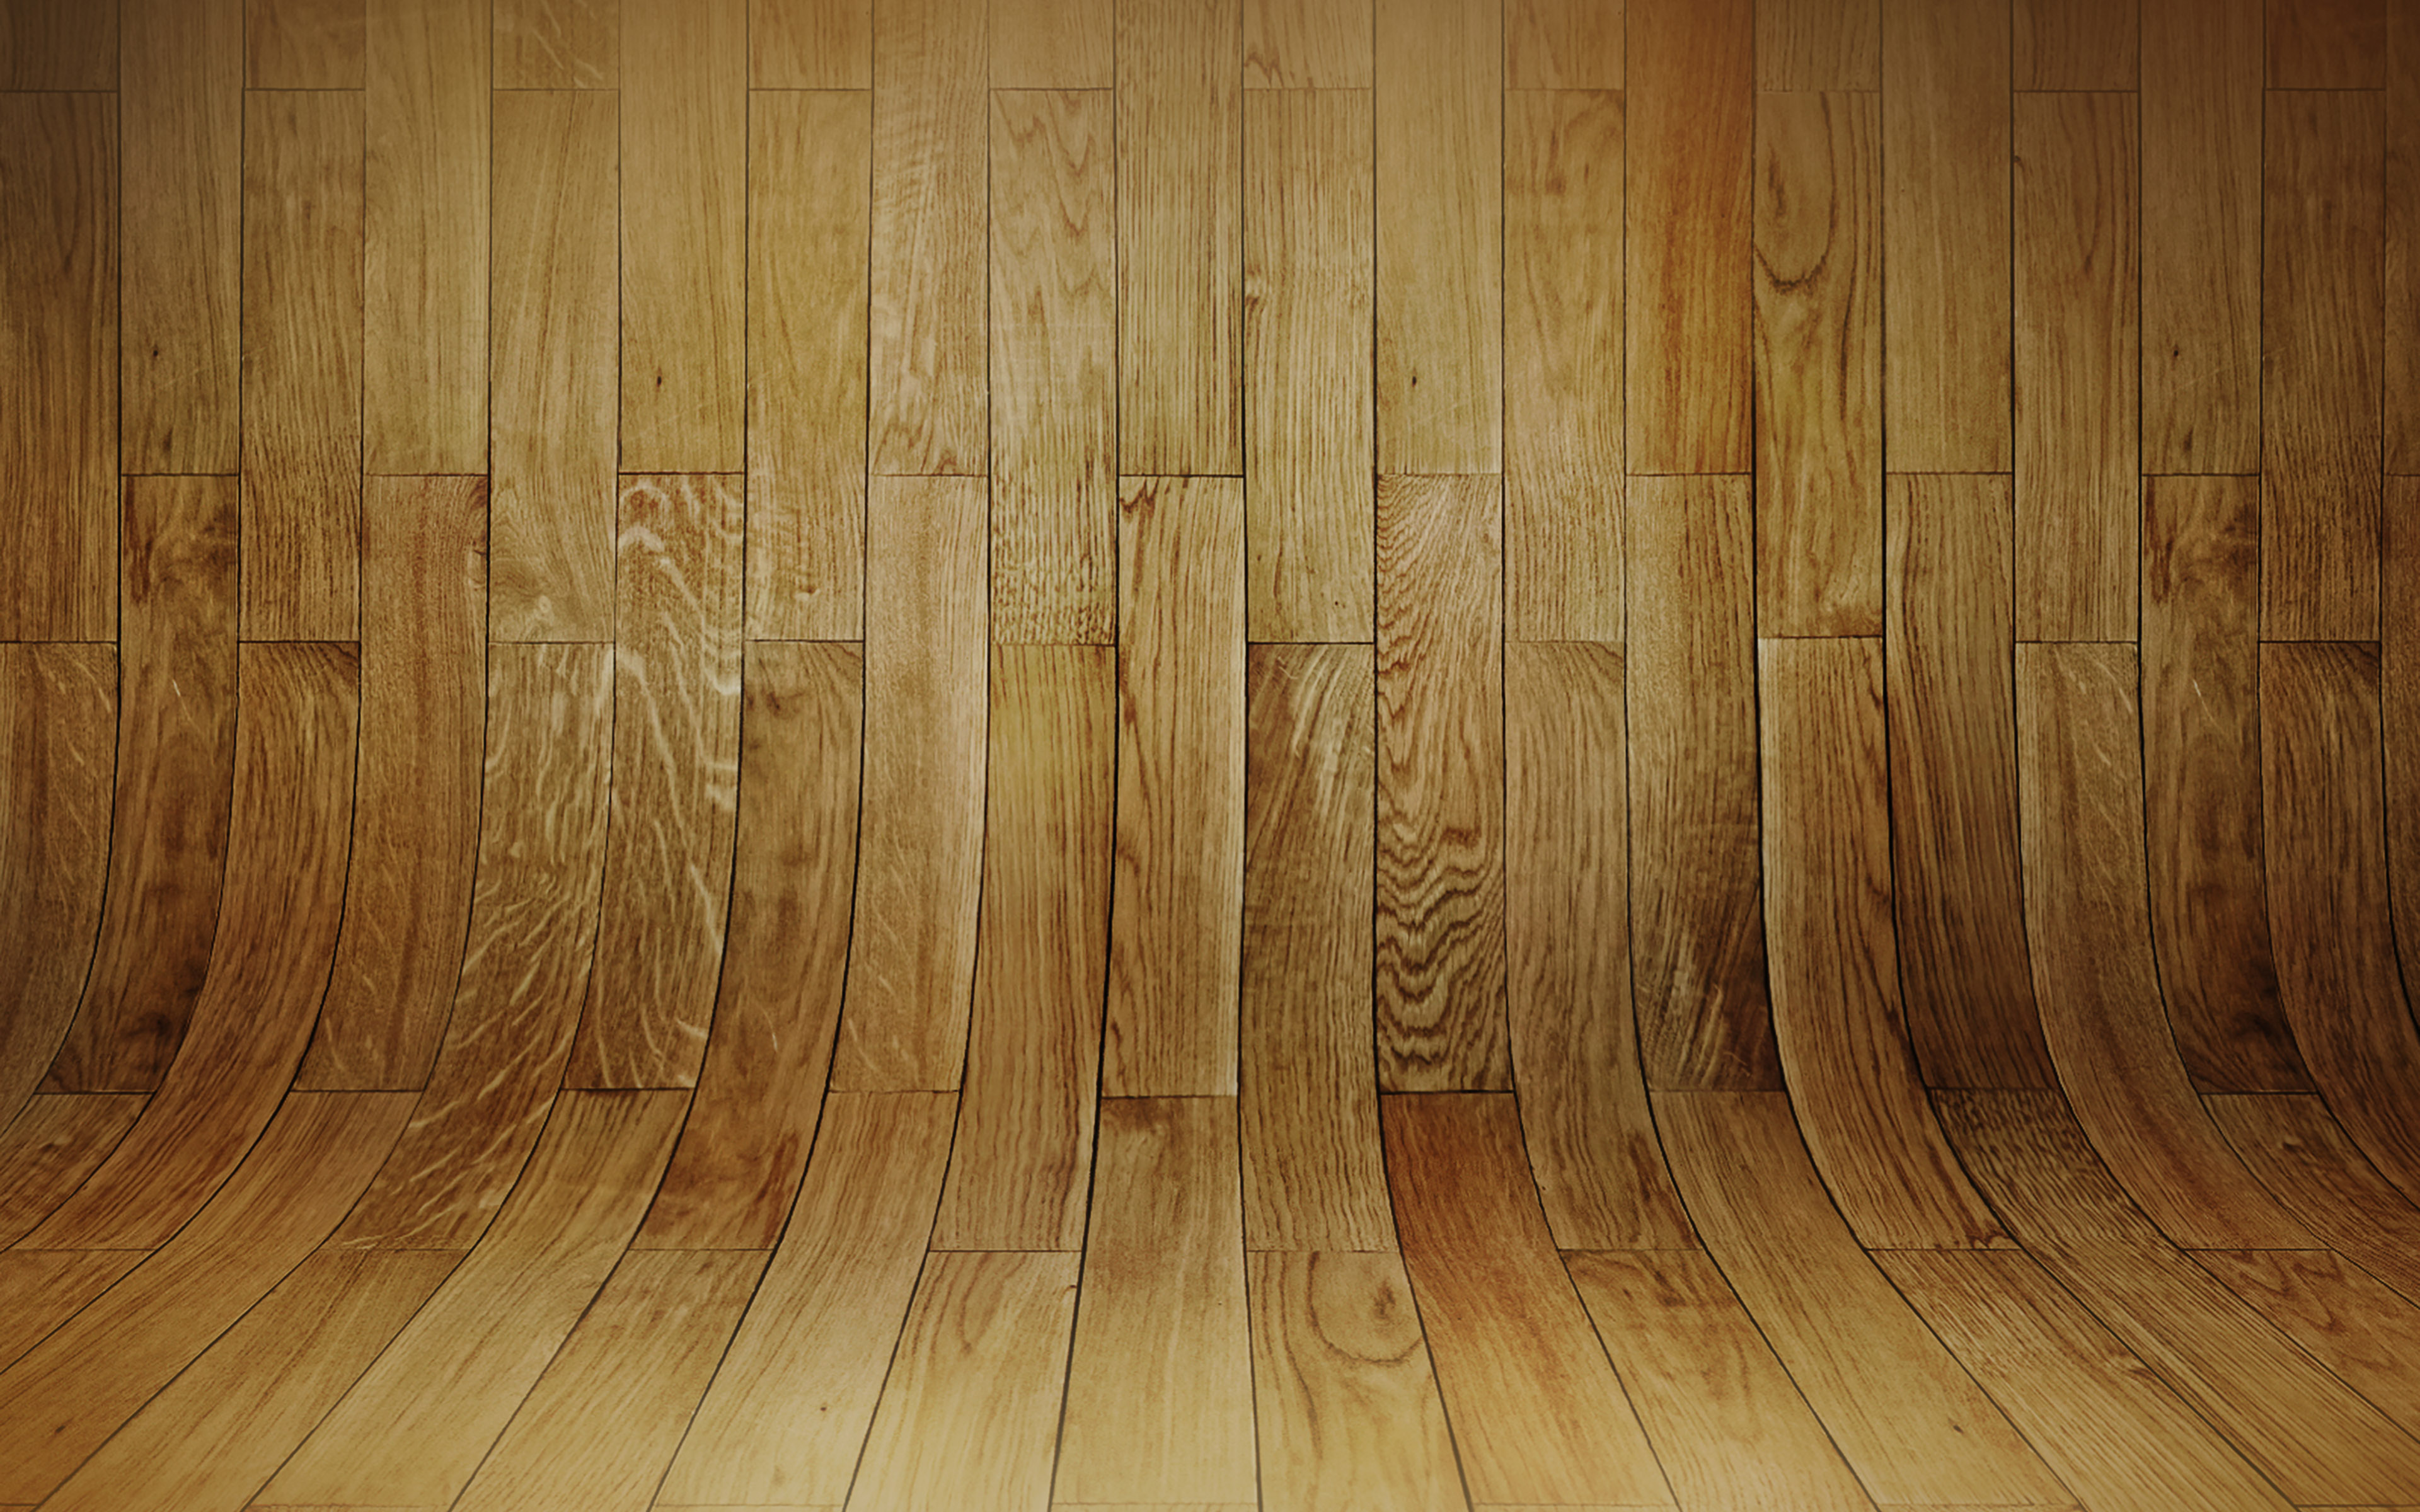 Wood Patterns Hd Wallpapers 4k 3840x2400 Wallpaper Teahub Io